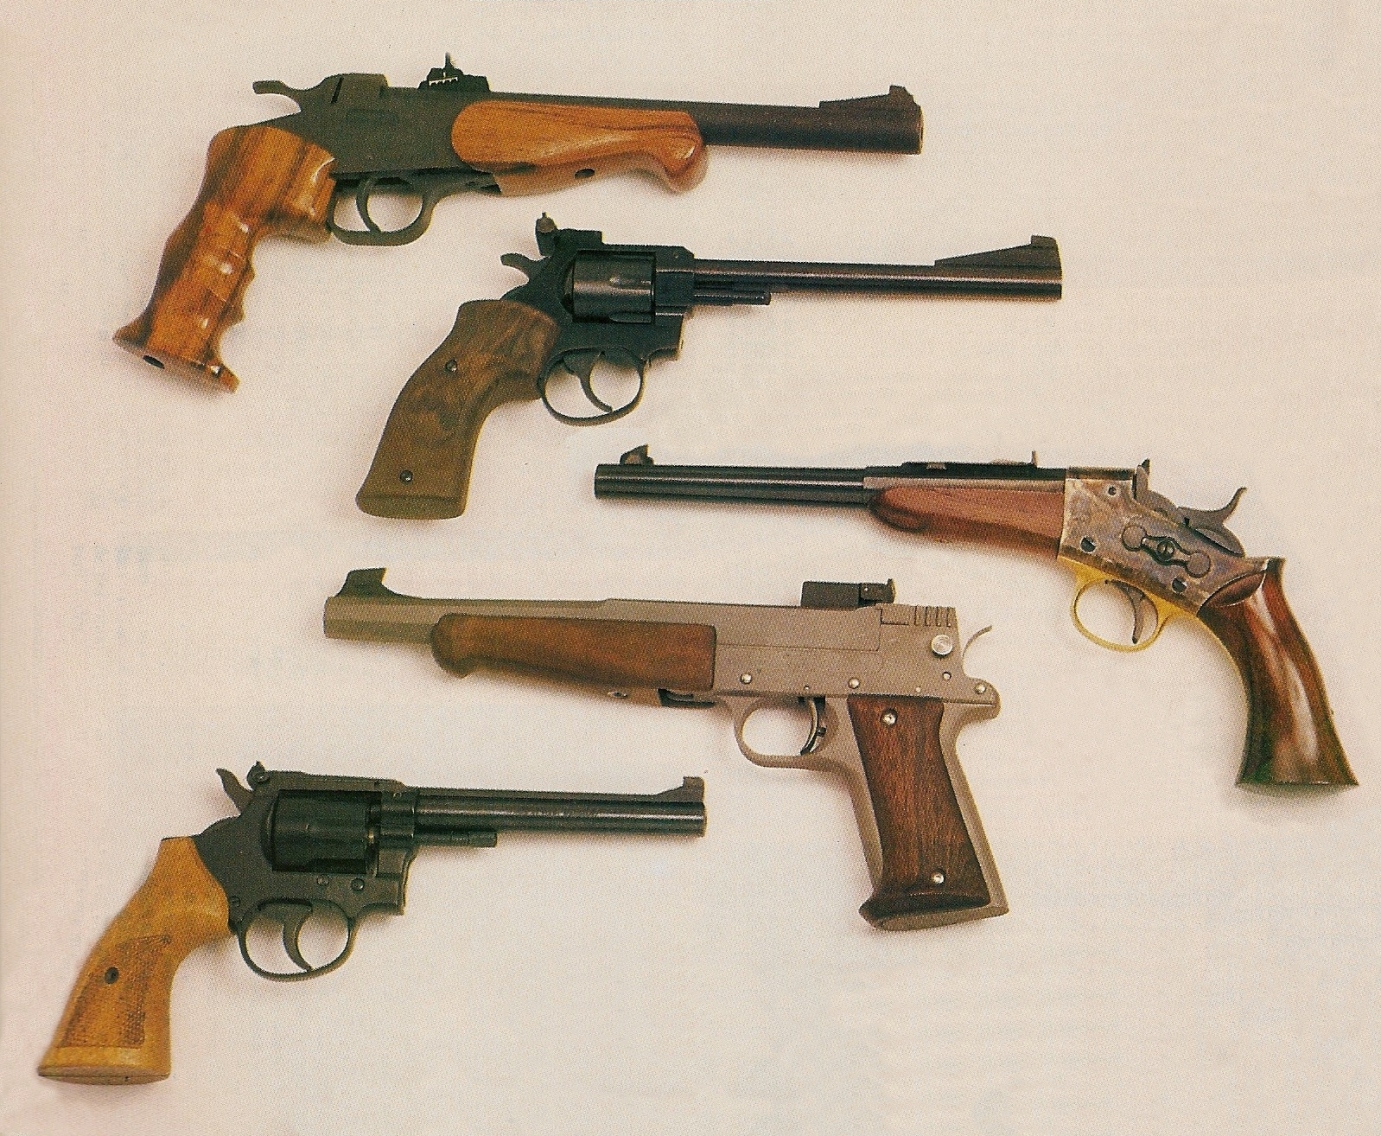 Le principal avantage des pistolets à un coup à percussion annulaire, chambrés en calibre .22 Long Rifle ou .22 Magnum, était constitué par le fait qu’ils pouvaient être librement achetés et détenus, de même que leurs munitions (leur transport était autorisé mais le port, en revanche était interdit).